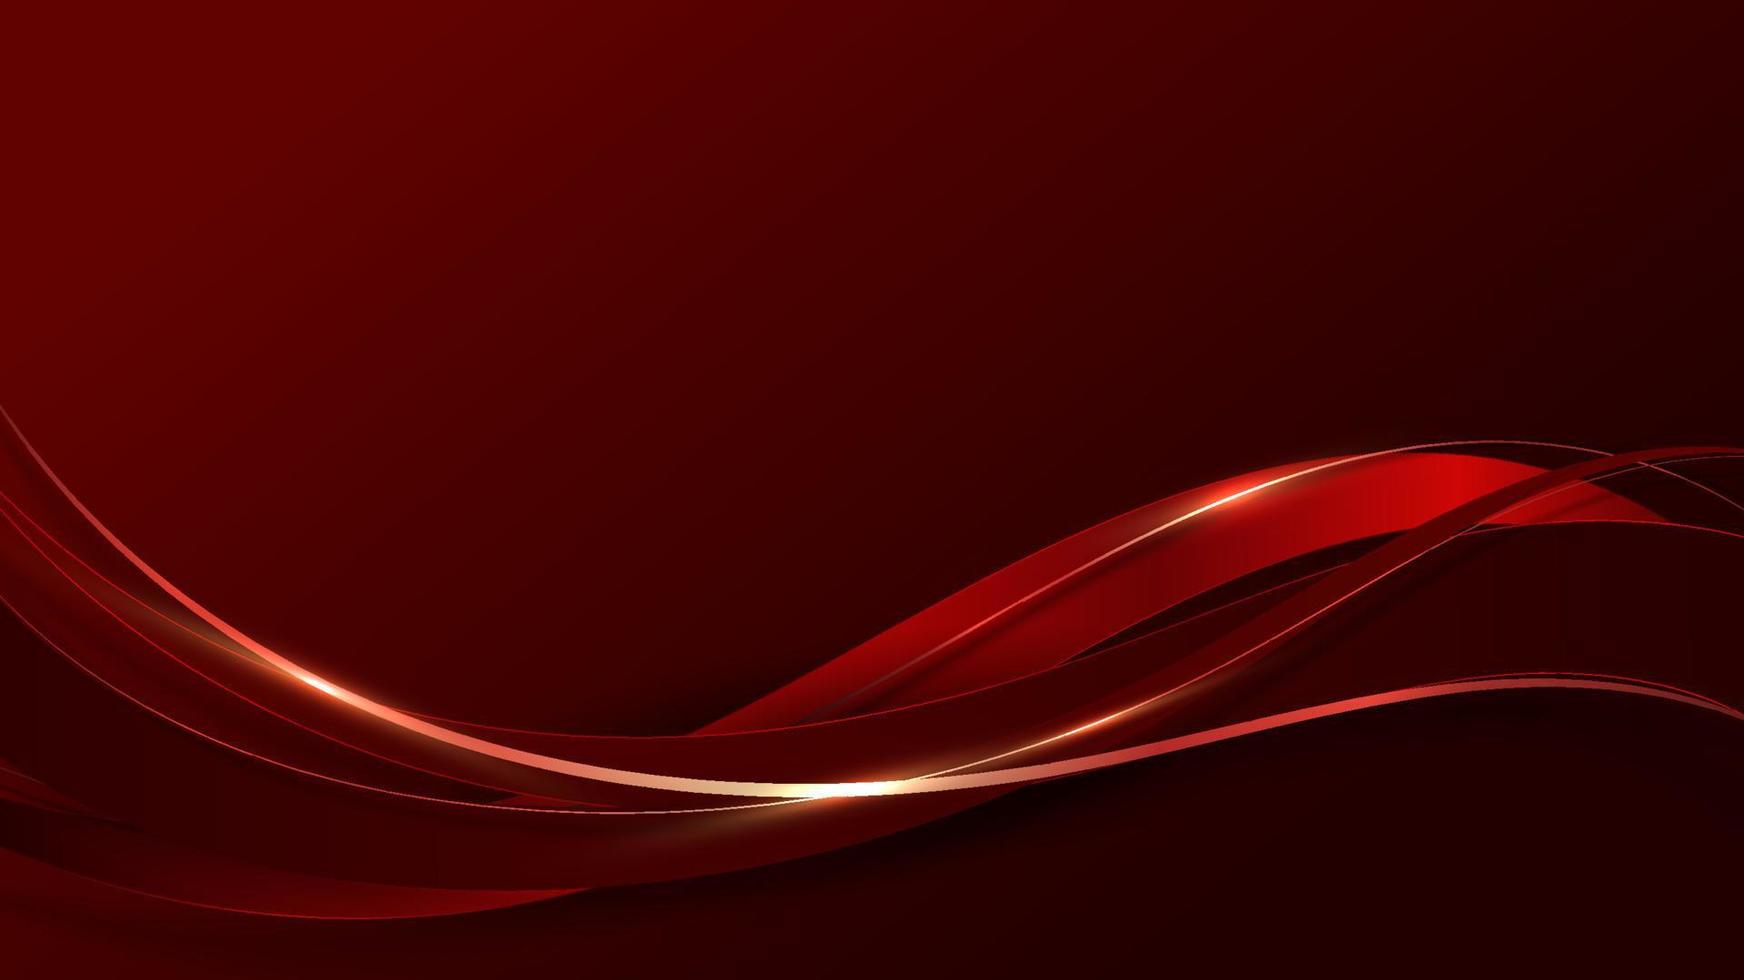 linhas de onda de cor vermelha de luxo 3d abstratas com decoração de linha curva dourada brilhante e iluminação de brilho em fundo vermelho gradiente vetor